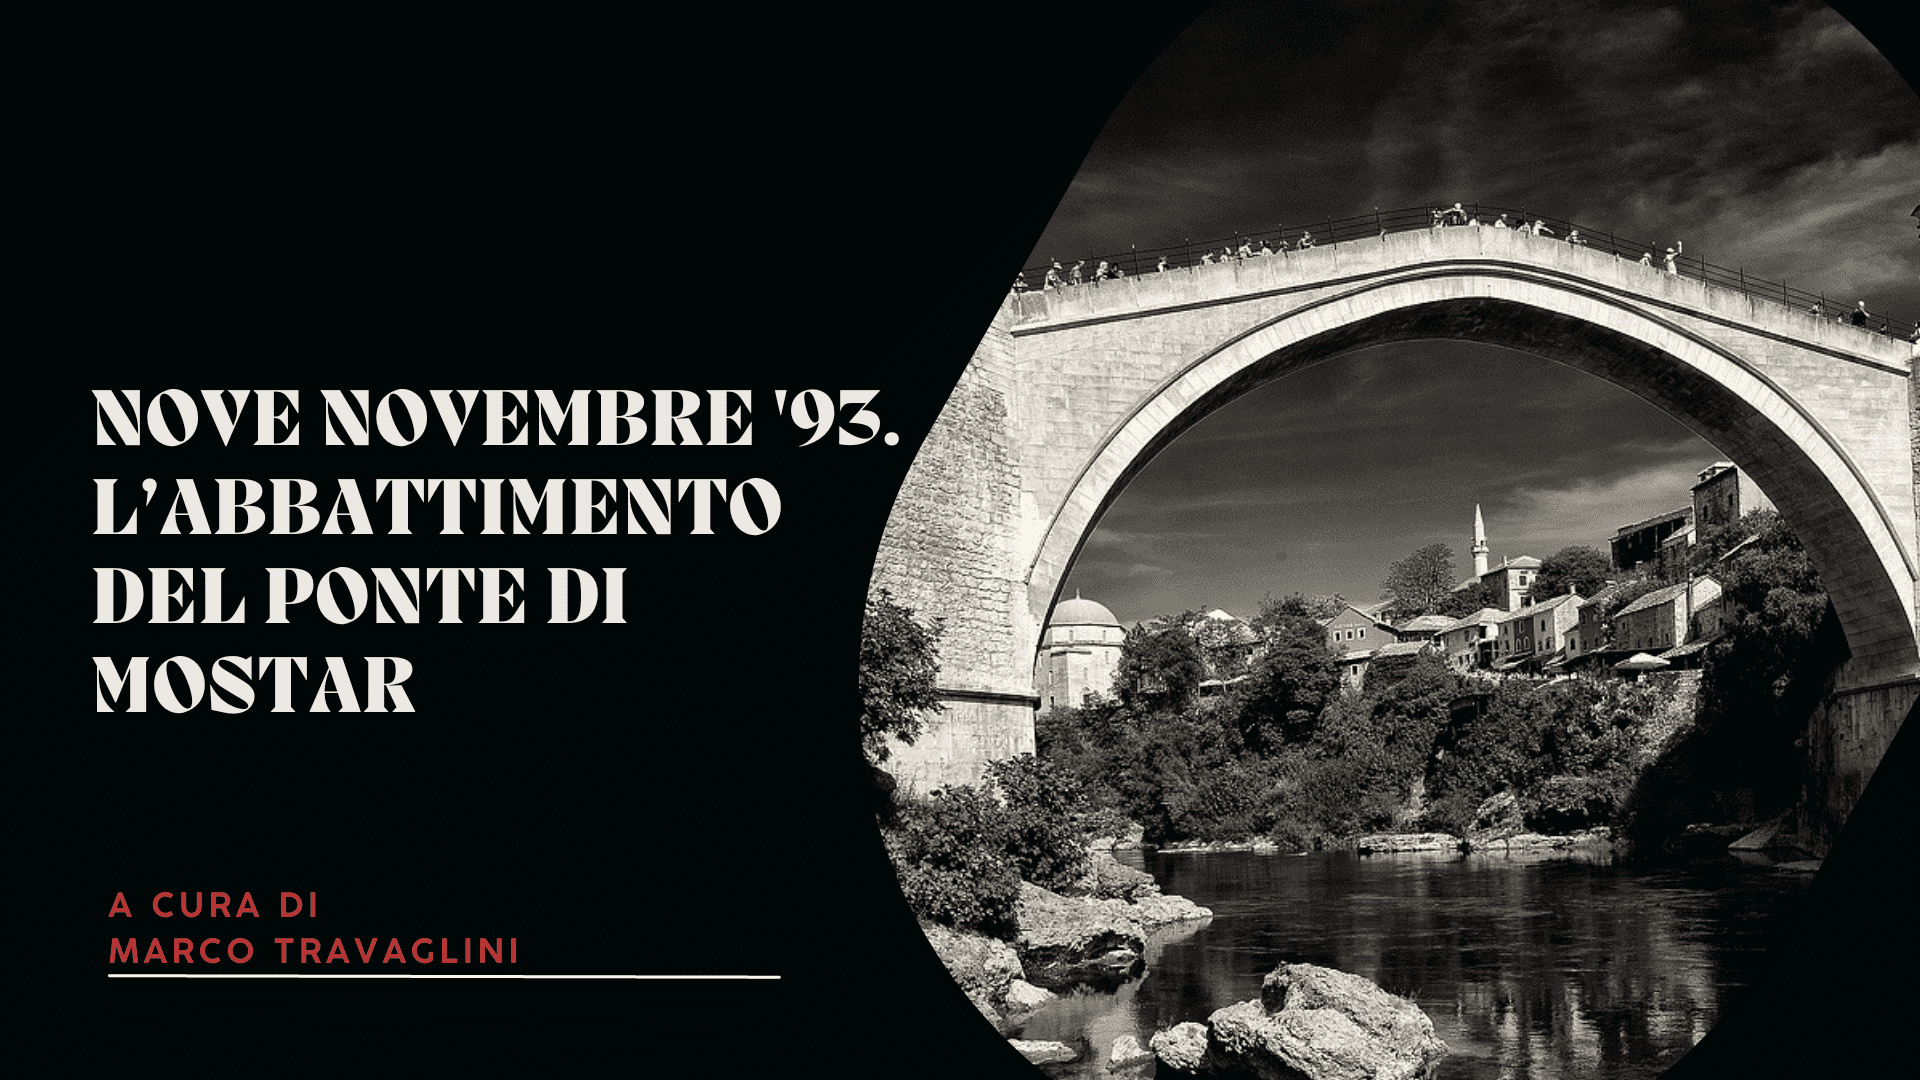 Nove novembre '93. L’abbattimento del ponte di Mostar